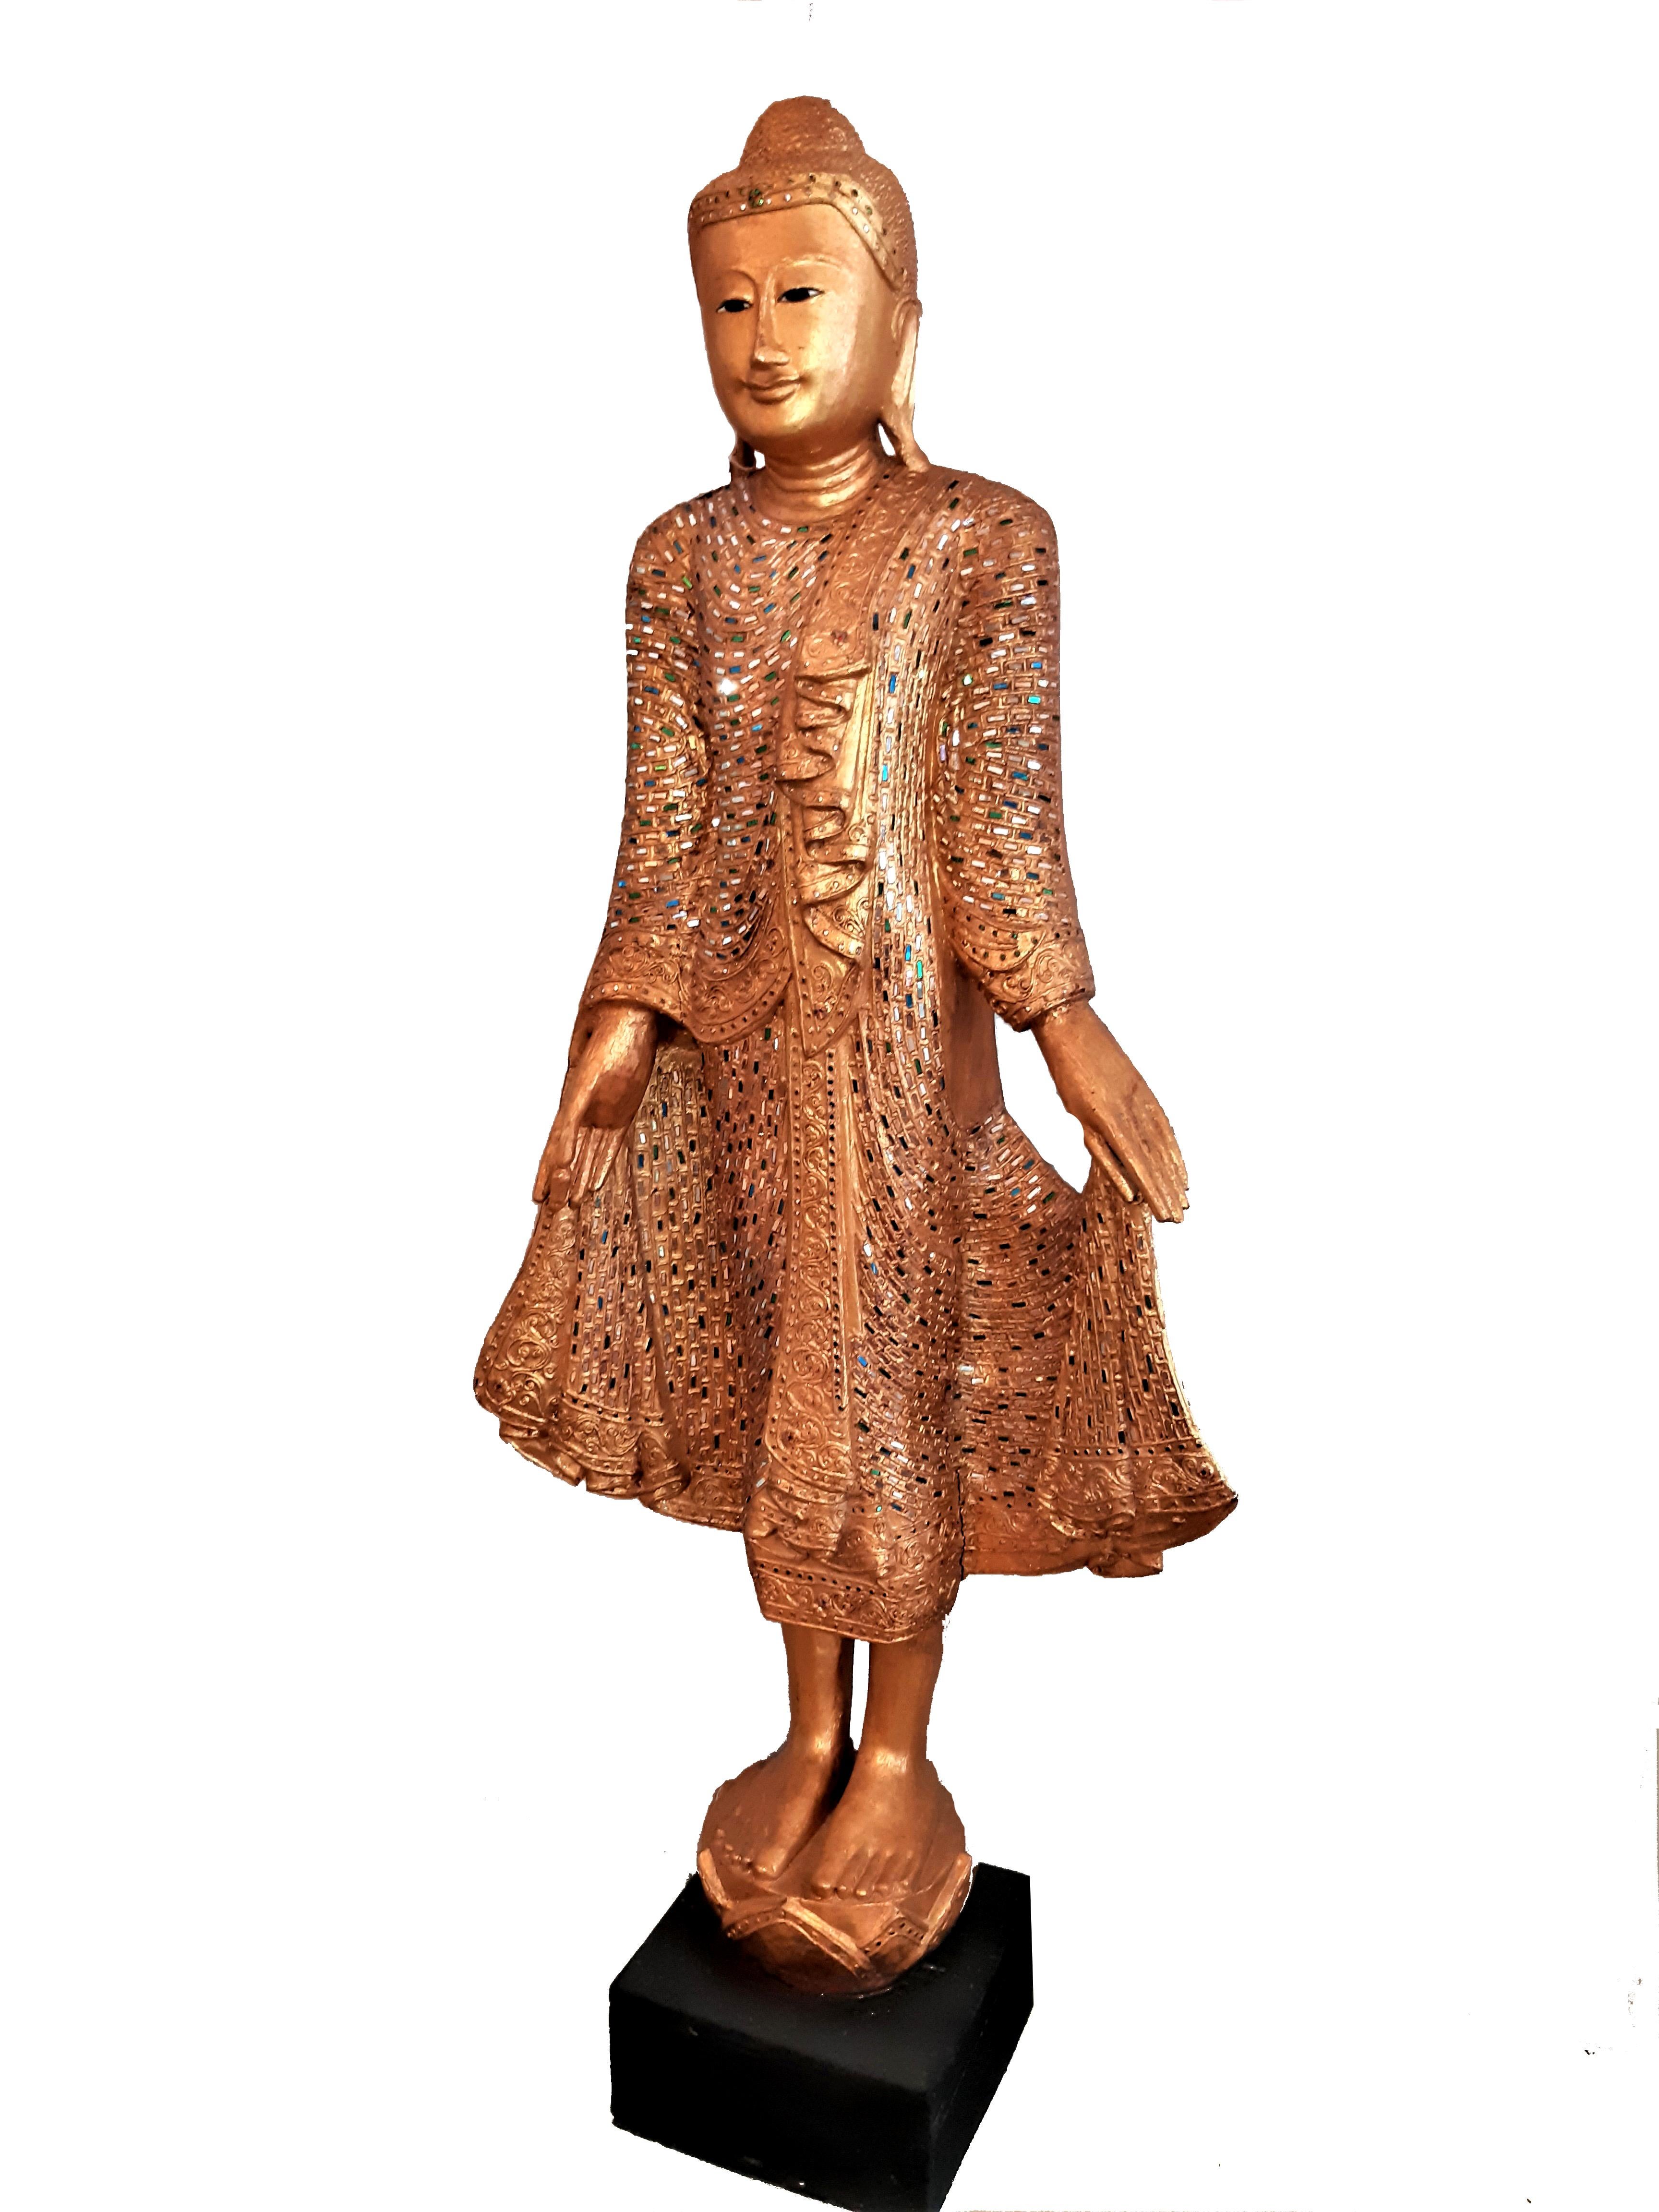 2x Skulptur Holzschnitzerei von Buddha Mandalay  

Mit reichhaltiger Bemalung / Steinebesatz. Höhe 168cm, im Bestzustand, keine Beschädigungen. Wohl aus den ca. 1970er Jahren

